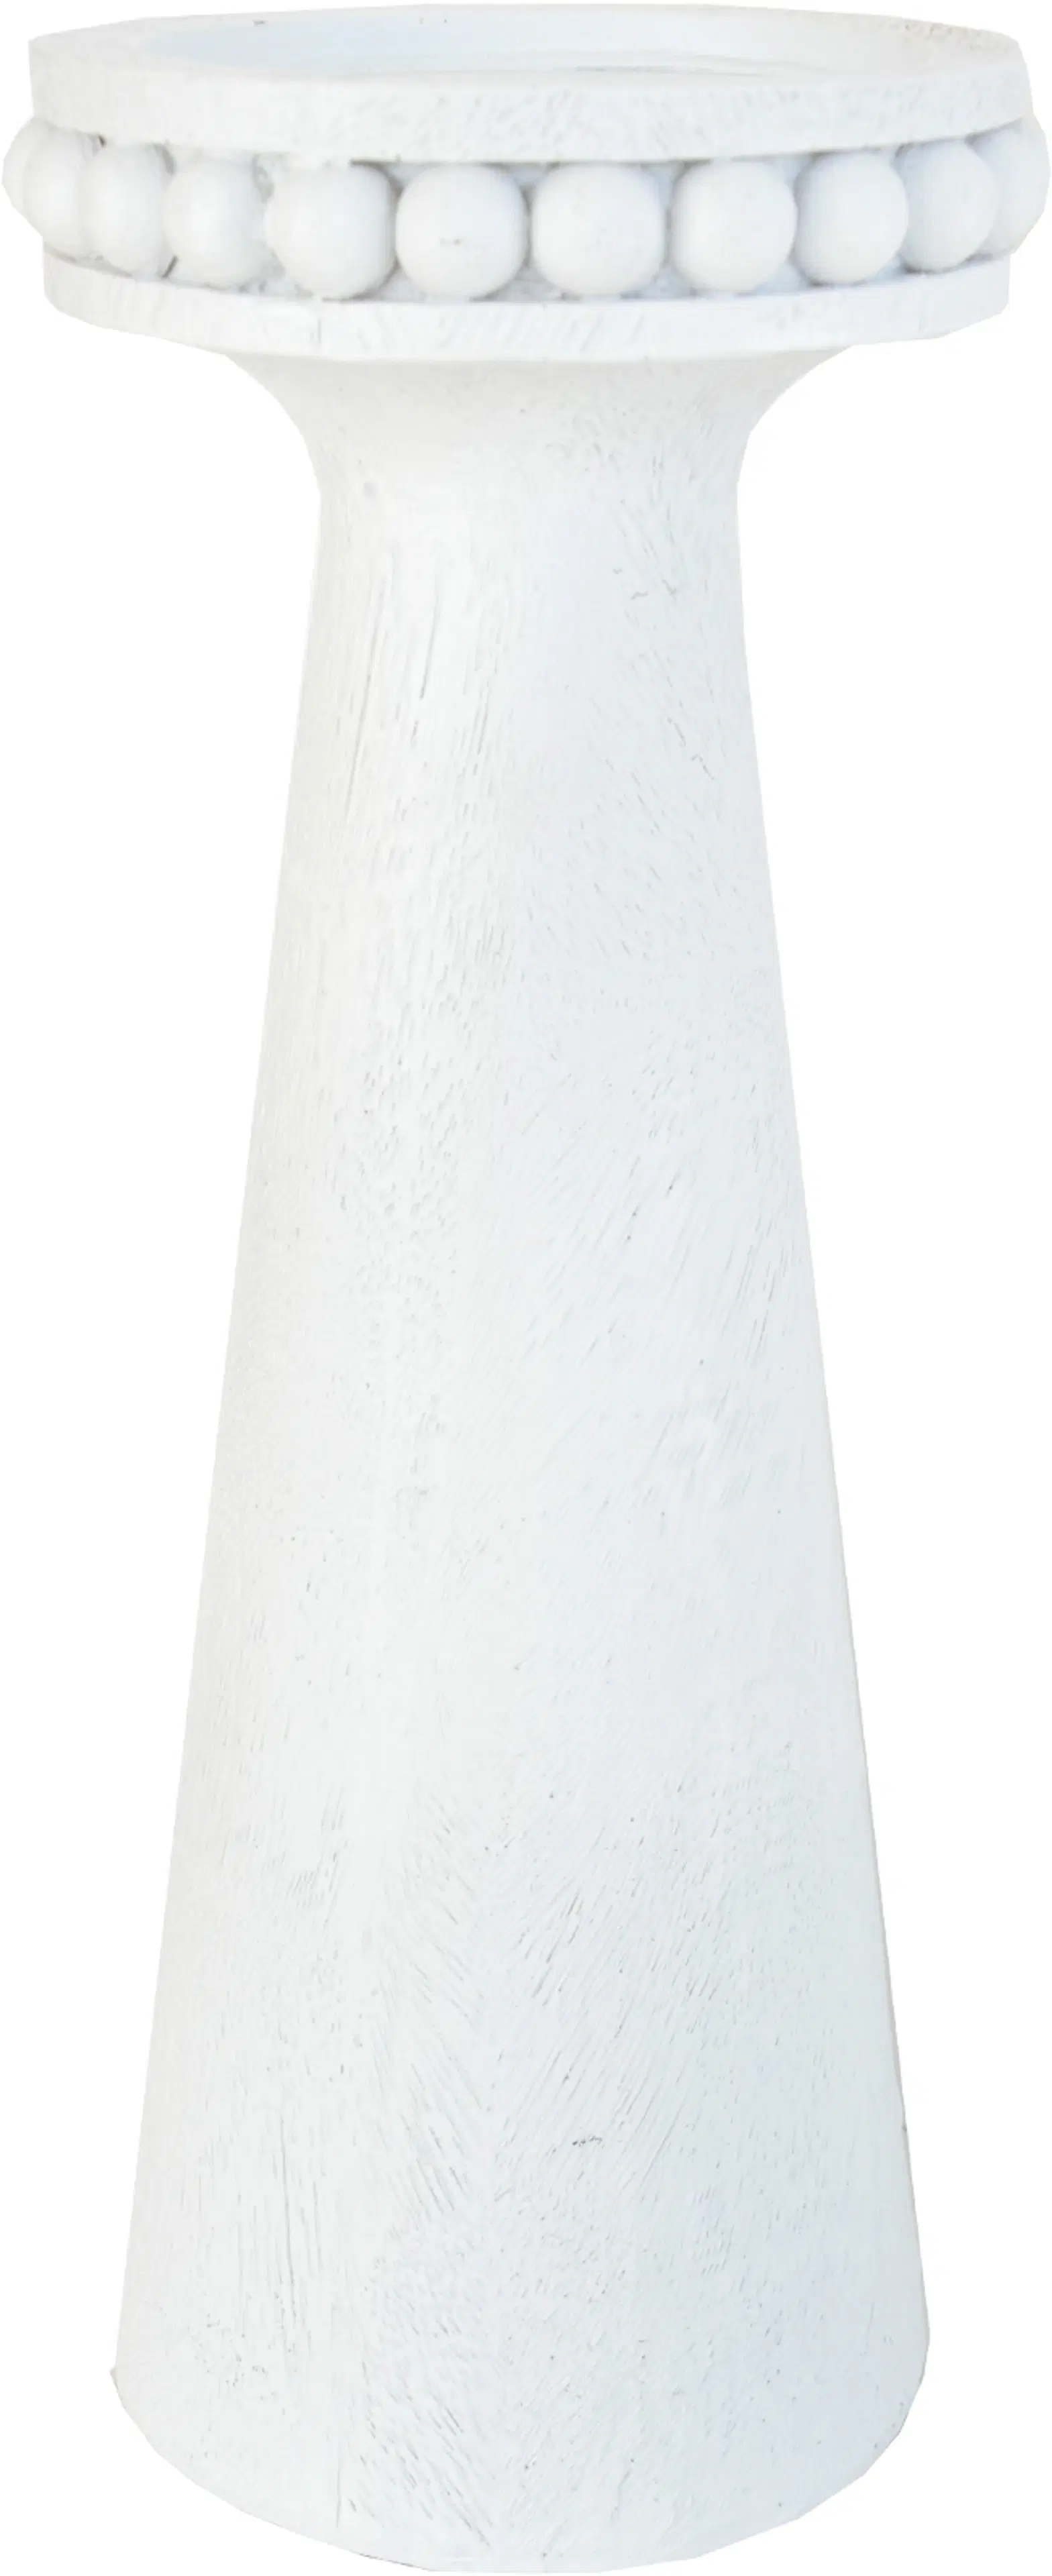 Finnmari Kynttilänjalka 11x11x28 cm valkoinen